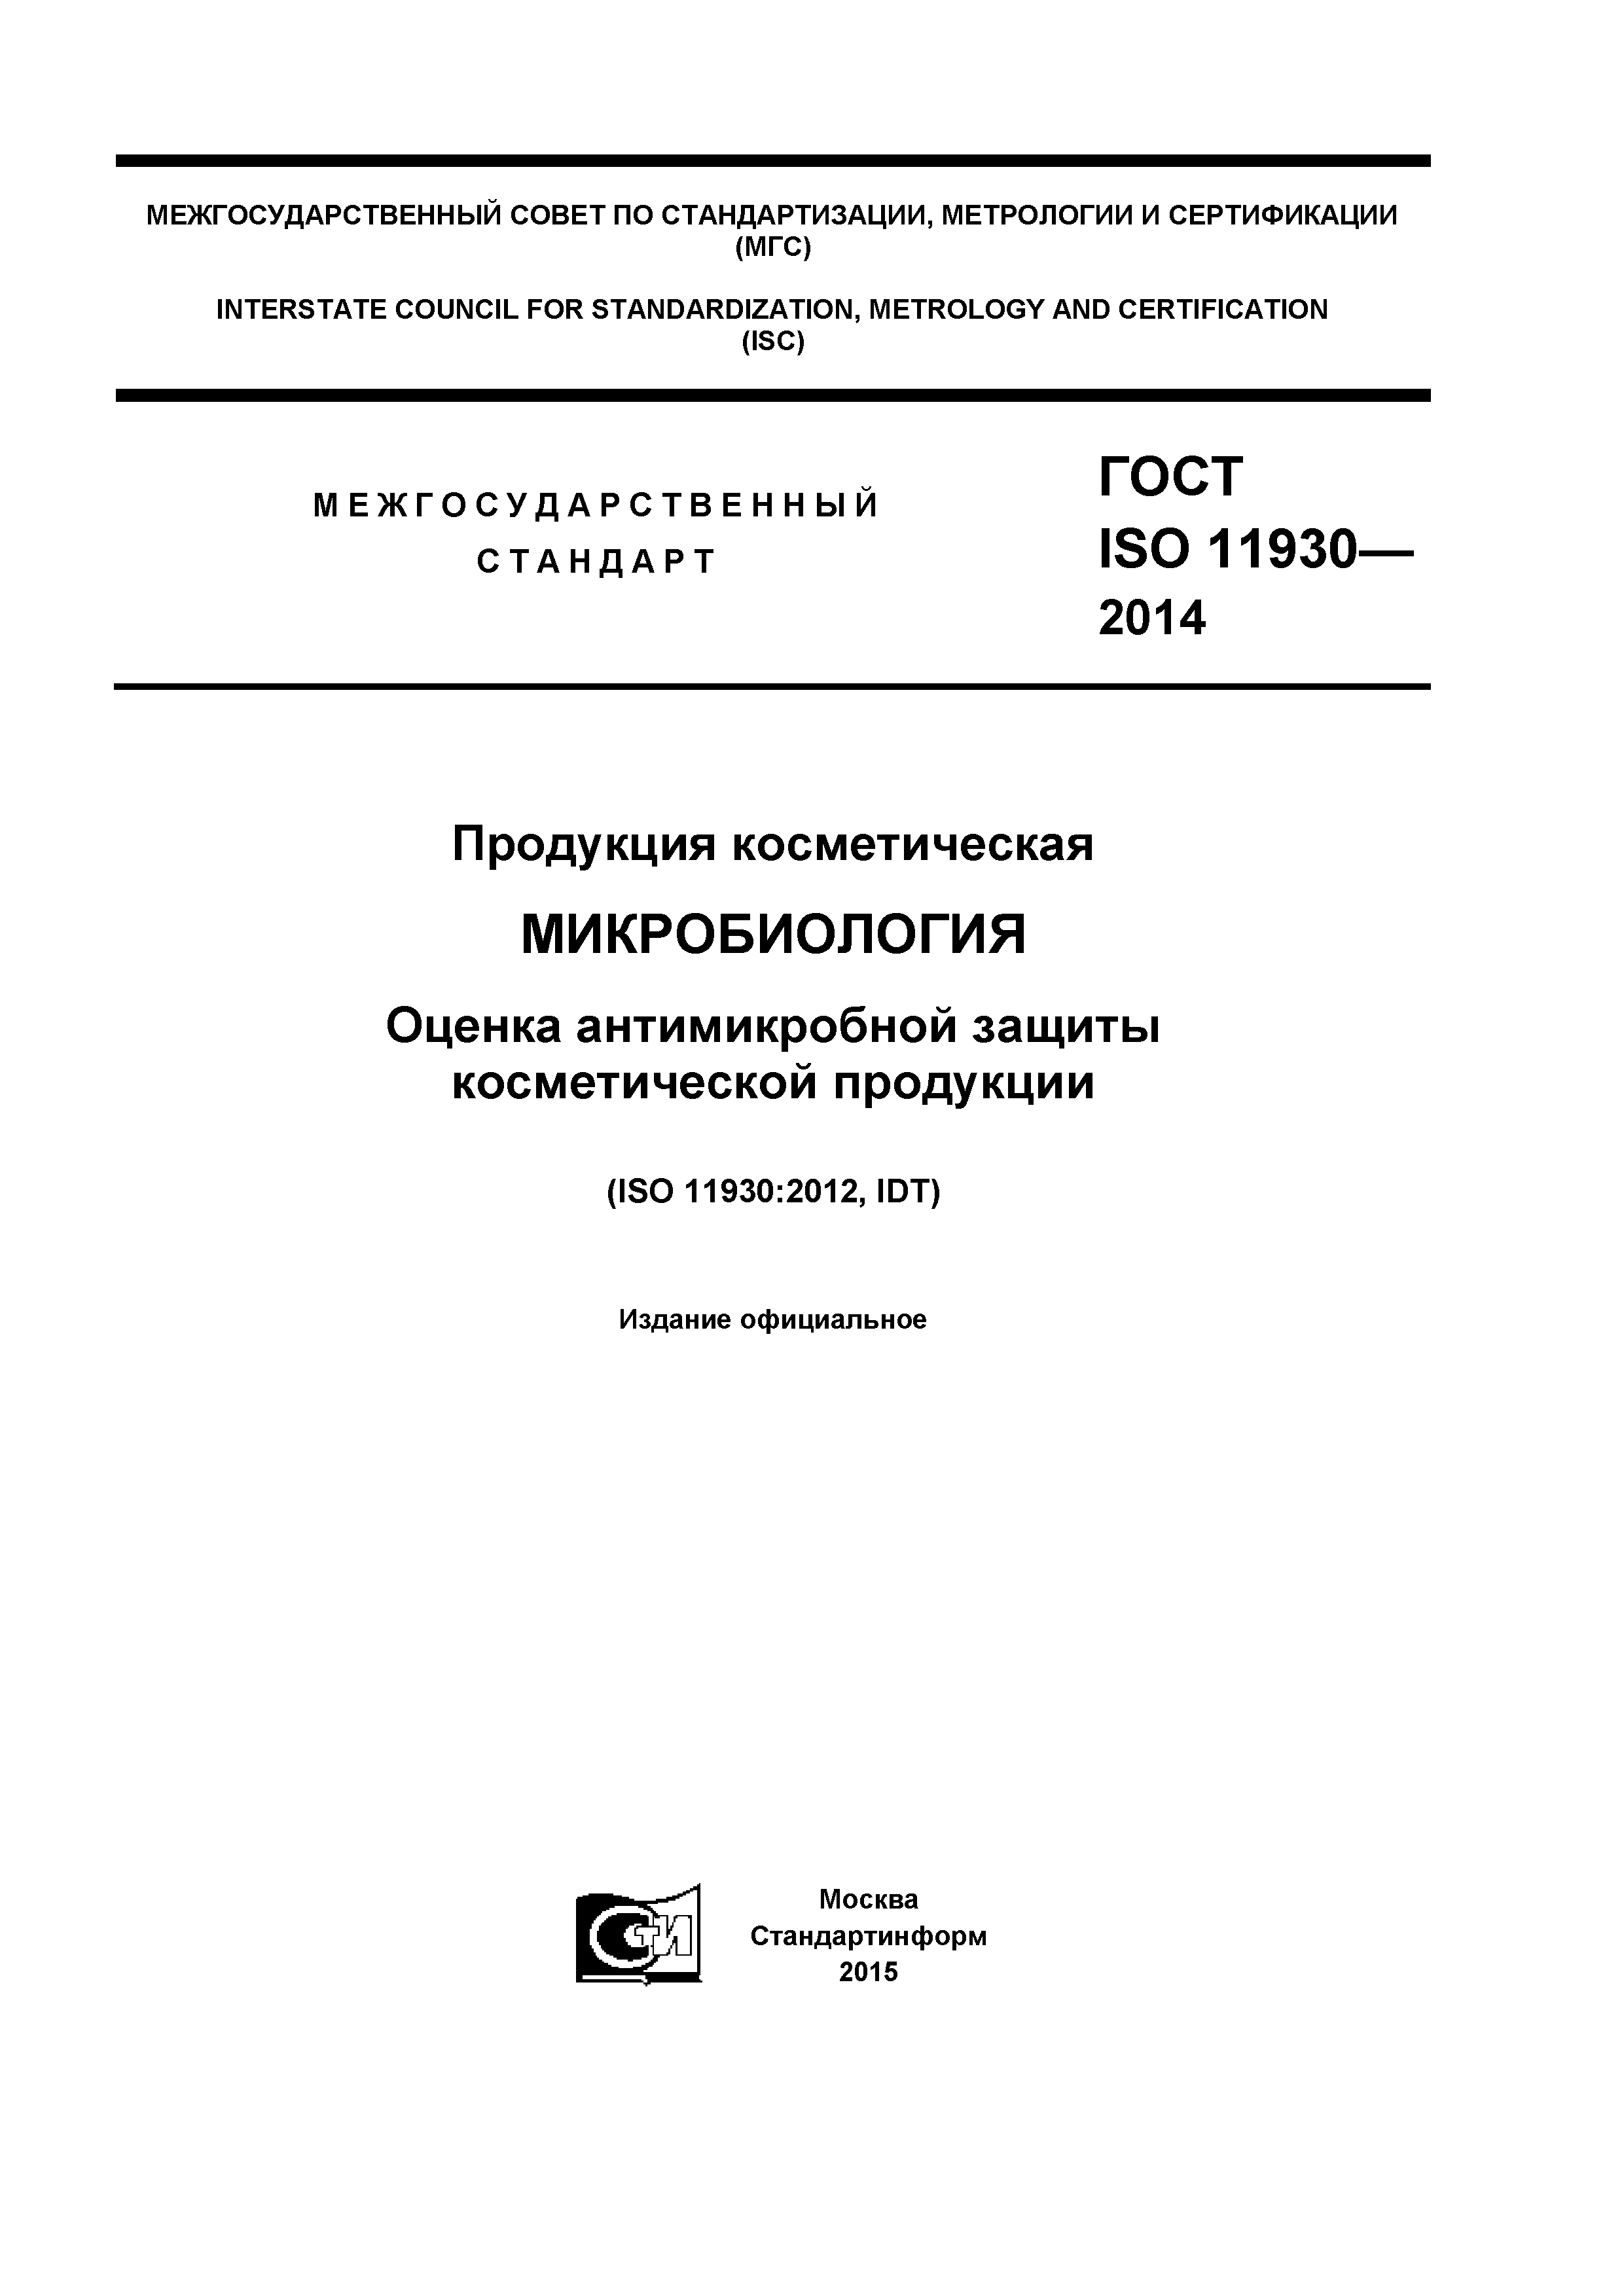 ГОСТ ISO 11930-2014